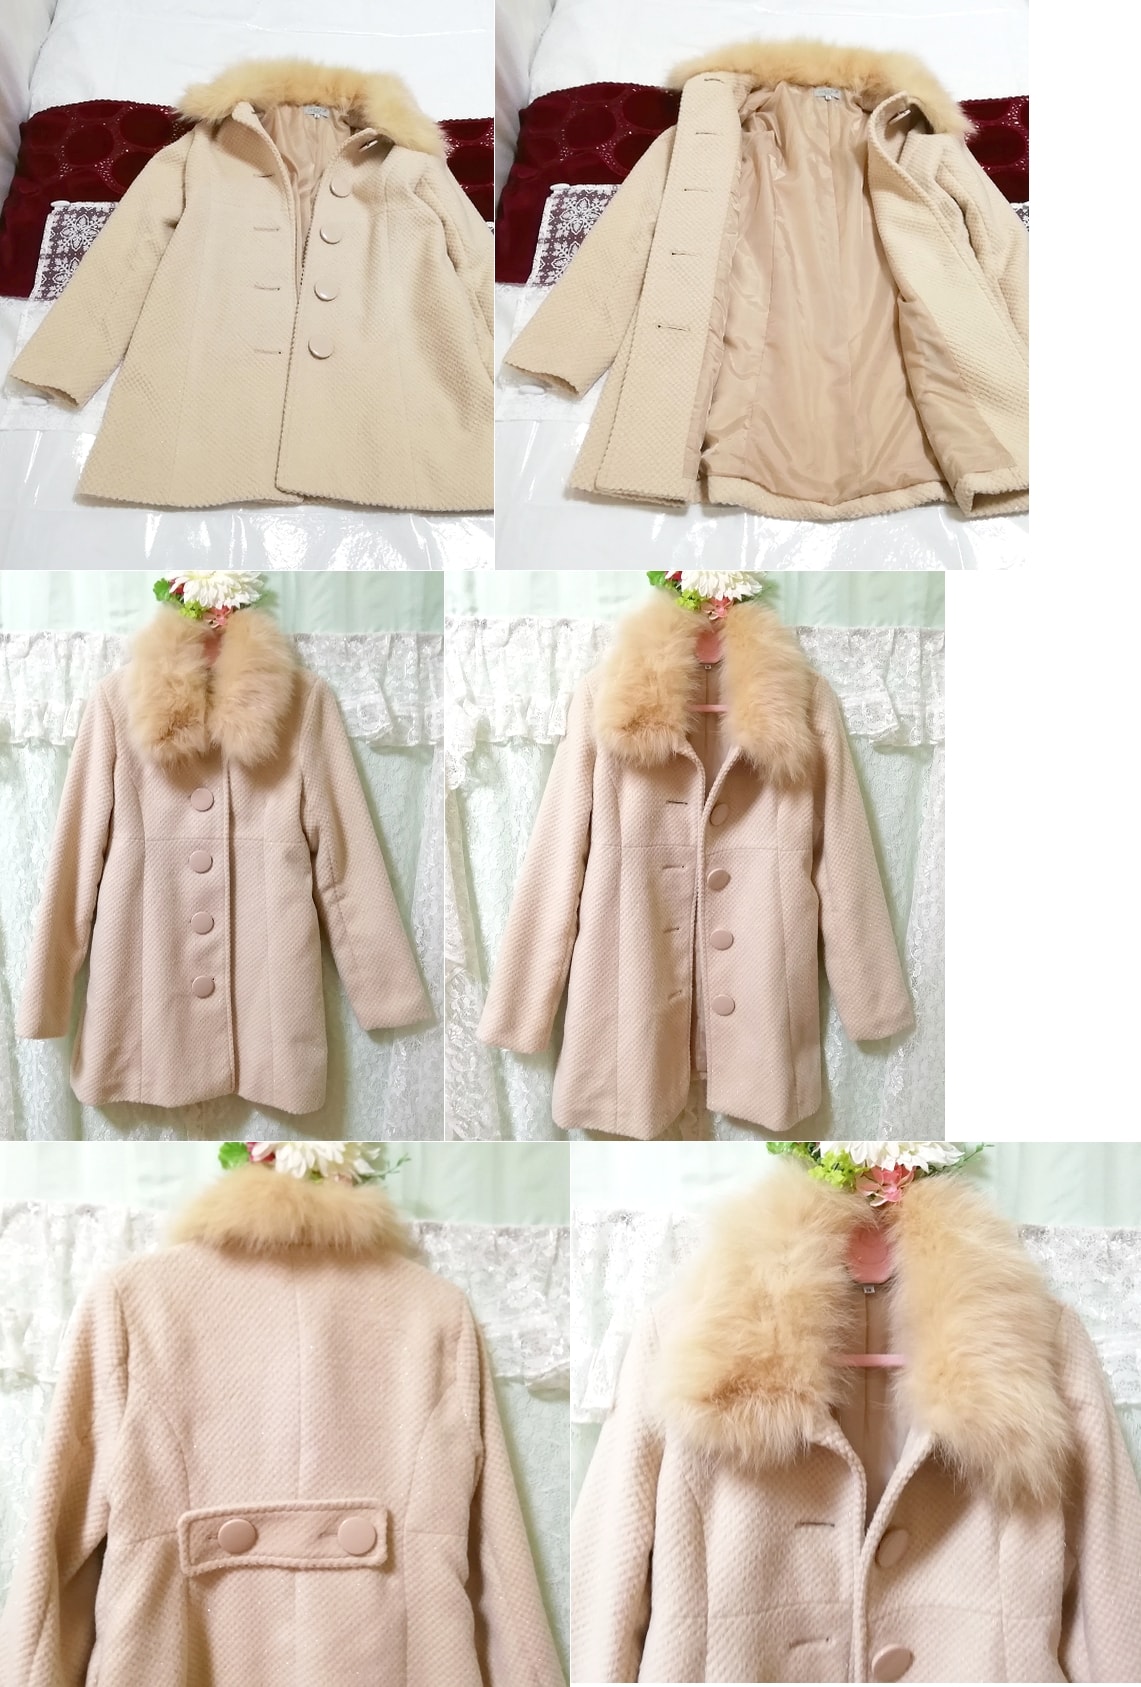 ブルーフォックスファーピンクベージュロングコート Blue fox fur pink beige long coat, コート, 毛皮、ファー, フォックス